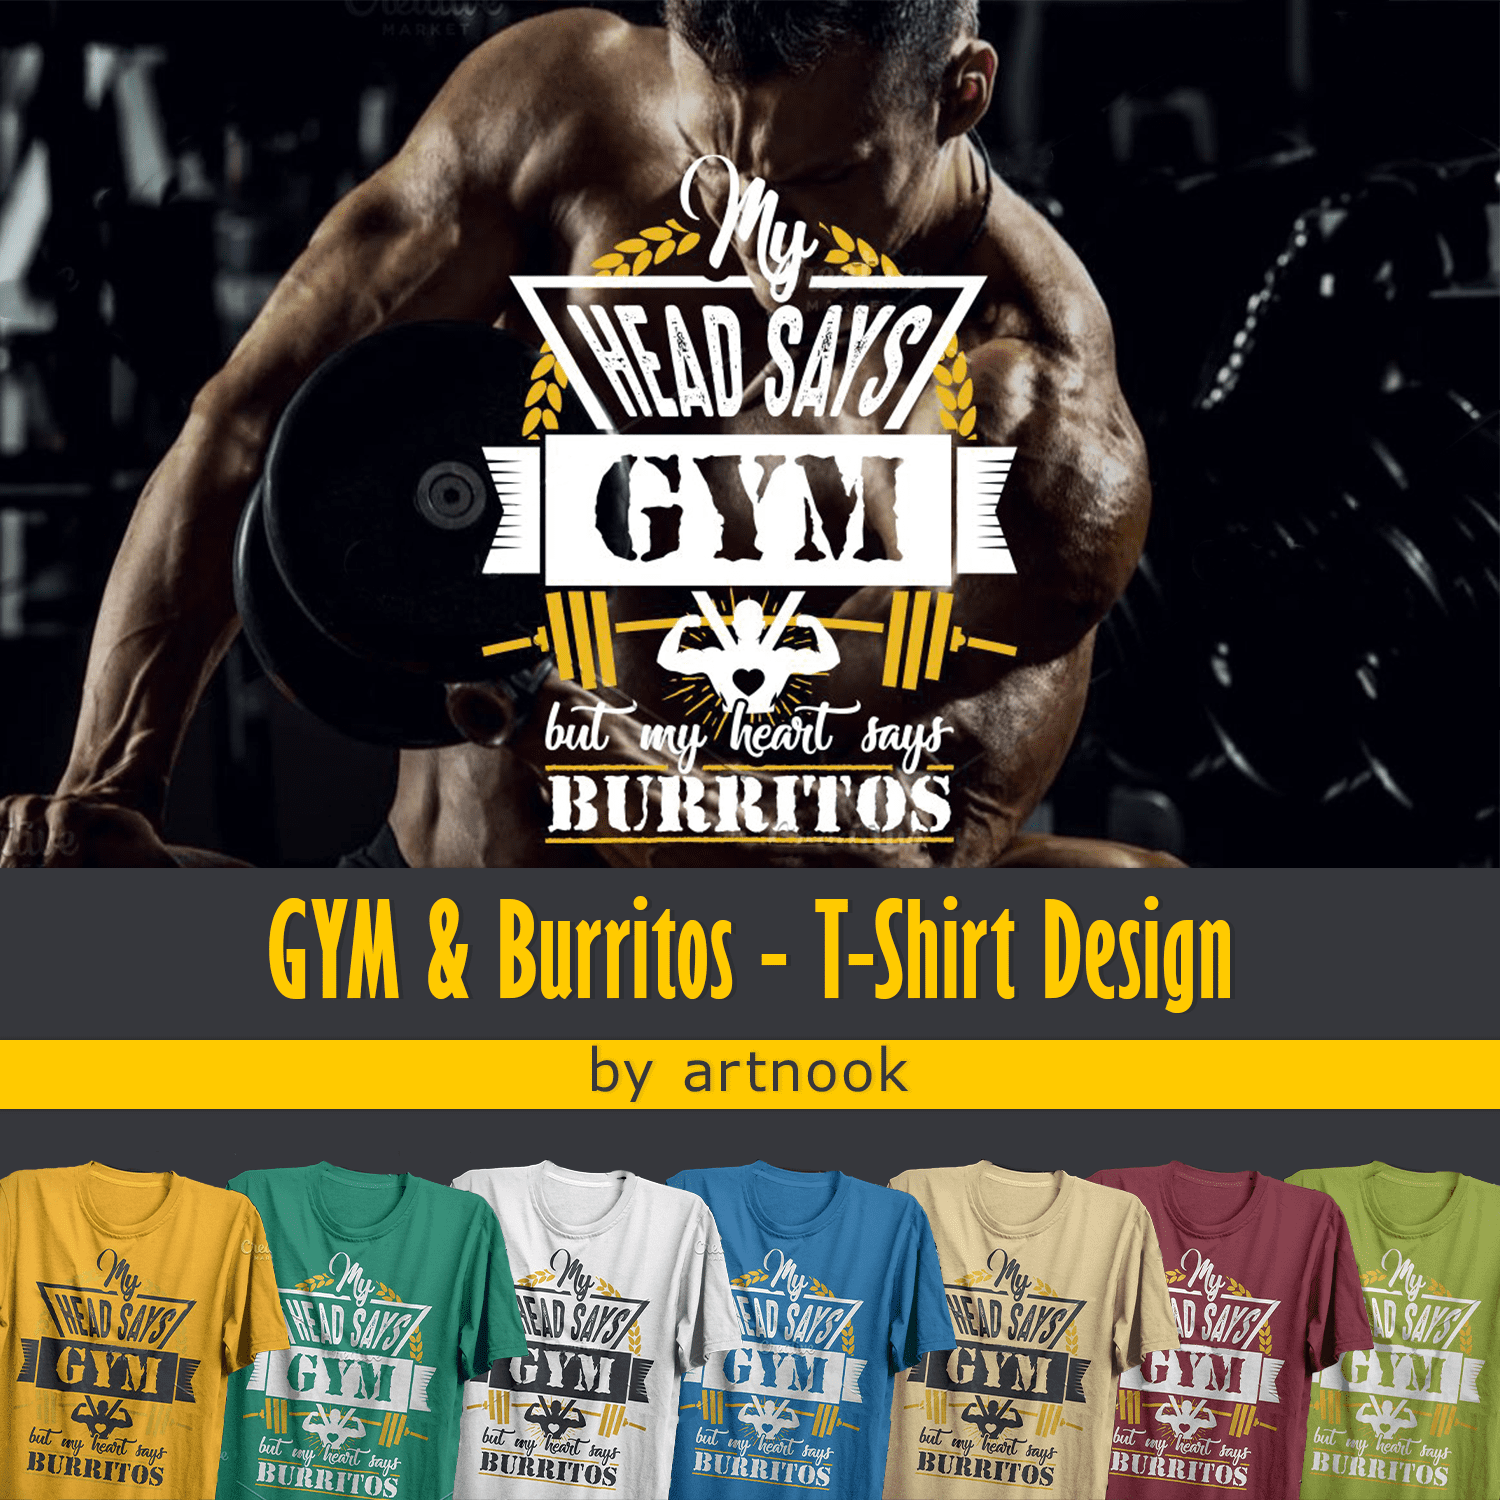 GYM & Burritos - T-Shirt Design cover.